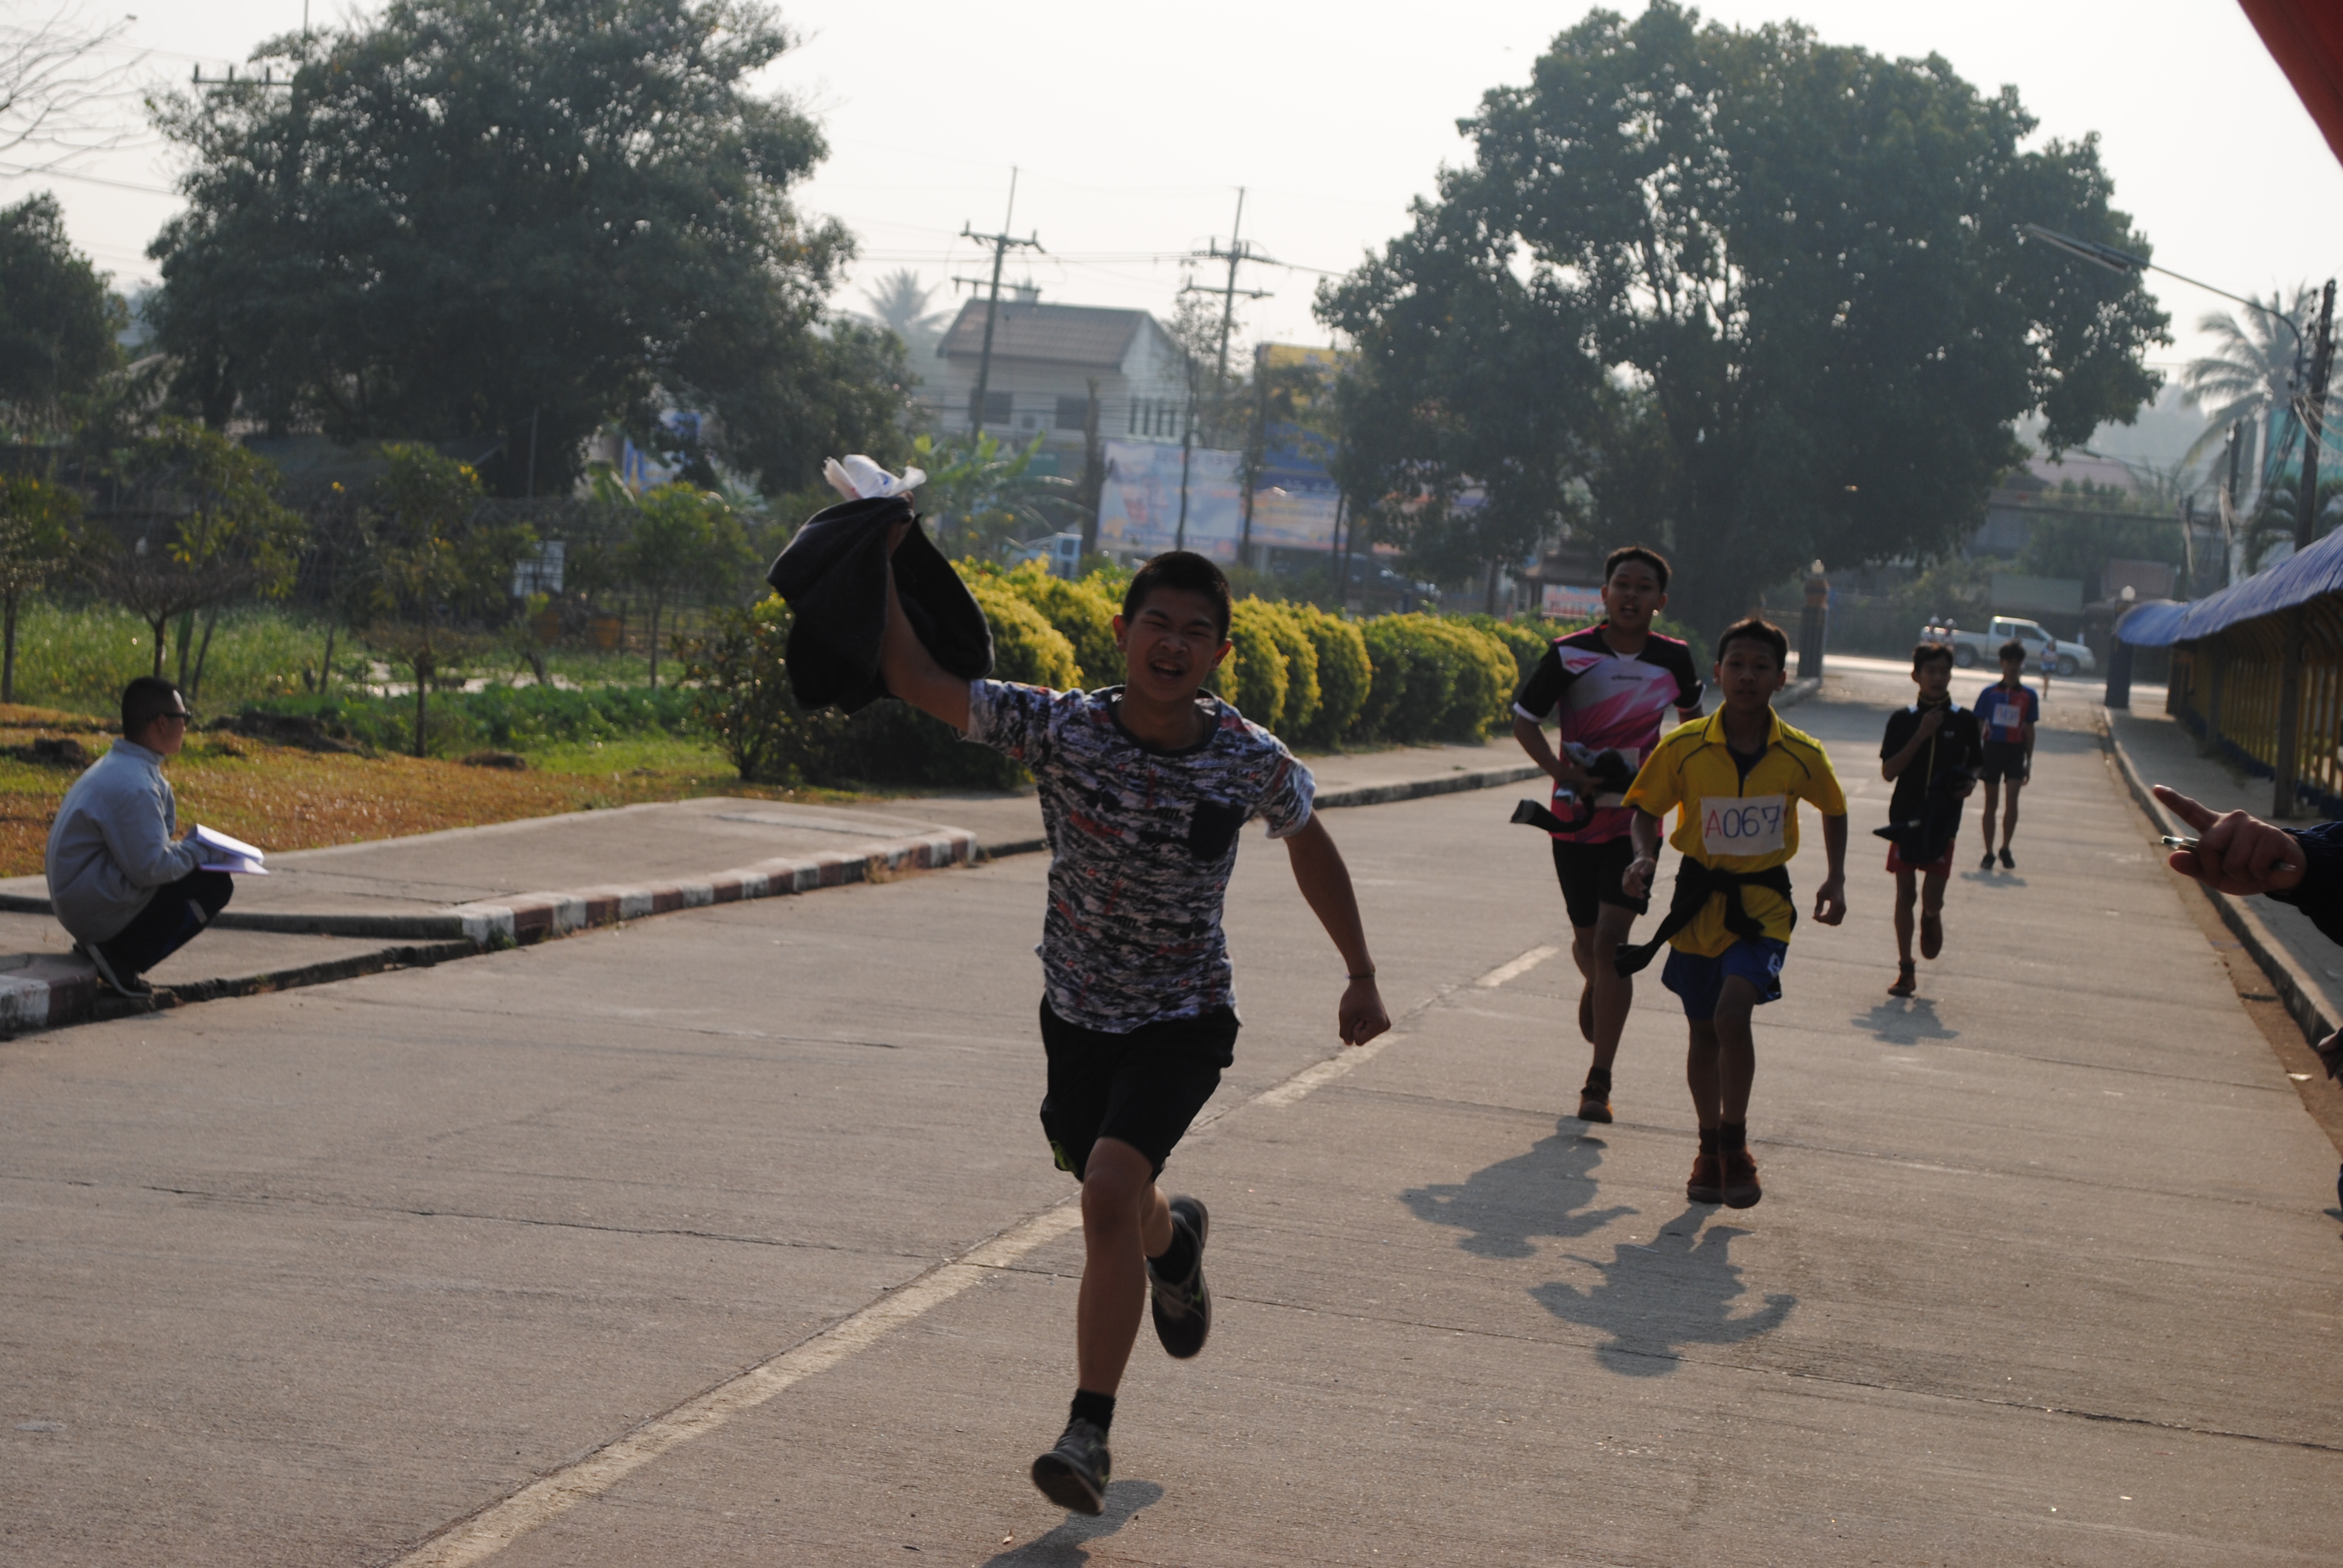 กิจกรรมเดิน-วิ่งมินิมาราธอน ครั้งที่ 1 ครบรอบ 42 ปี โรงเรียนดงเจนวิทยาคม